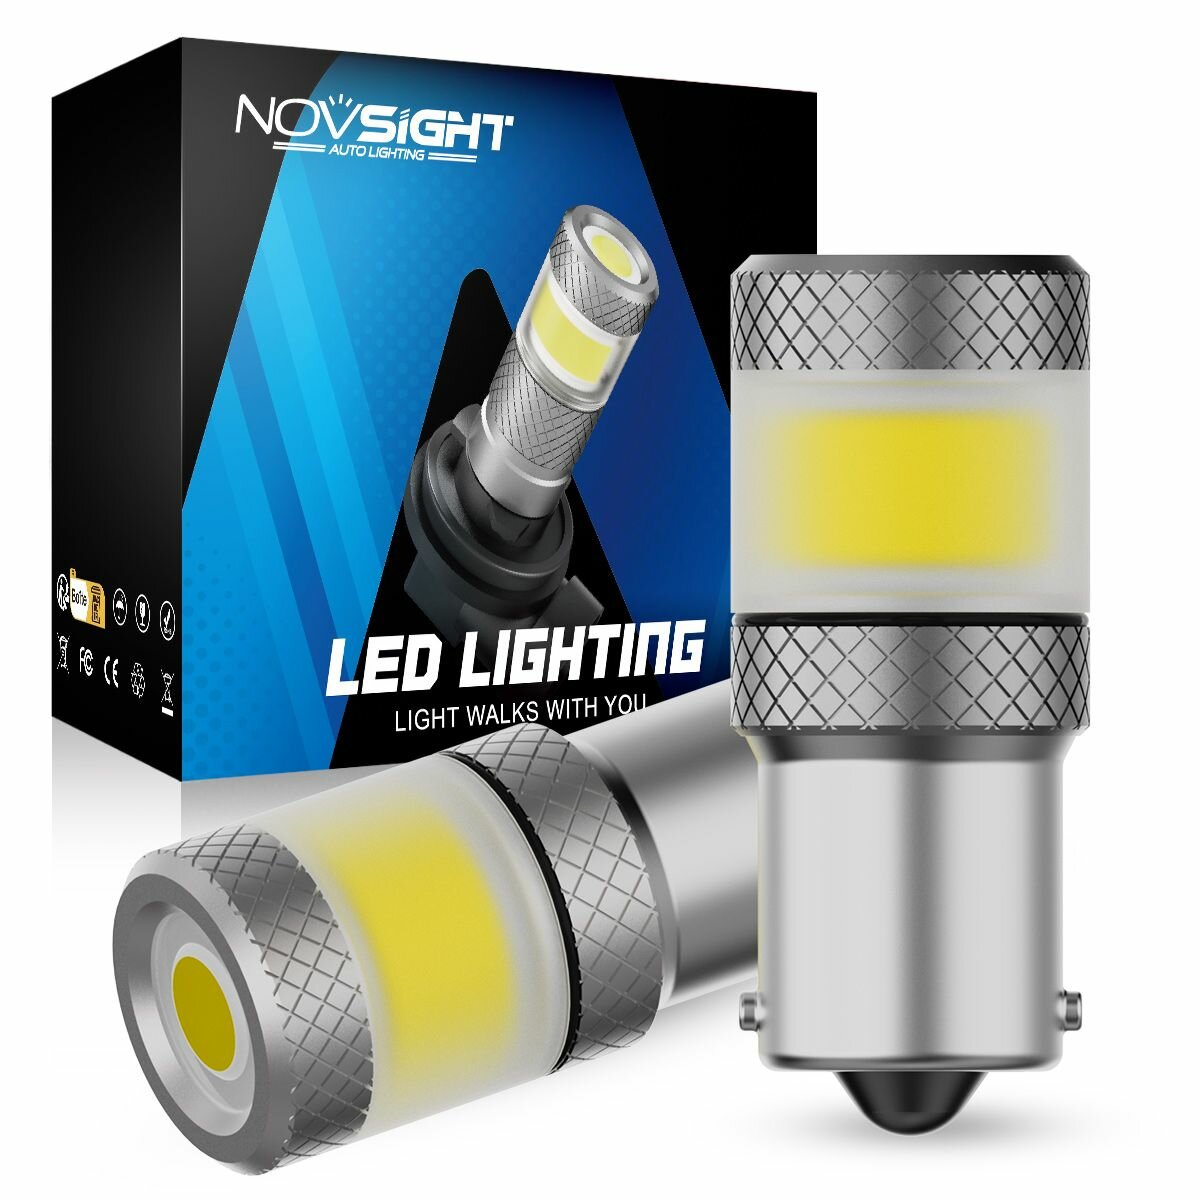 Светодиодная лампа Novsight SL7 1156 P21W цоколь BA15S 2шт одноконтактная белый свет LED автомобильная